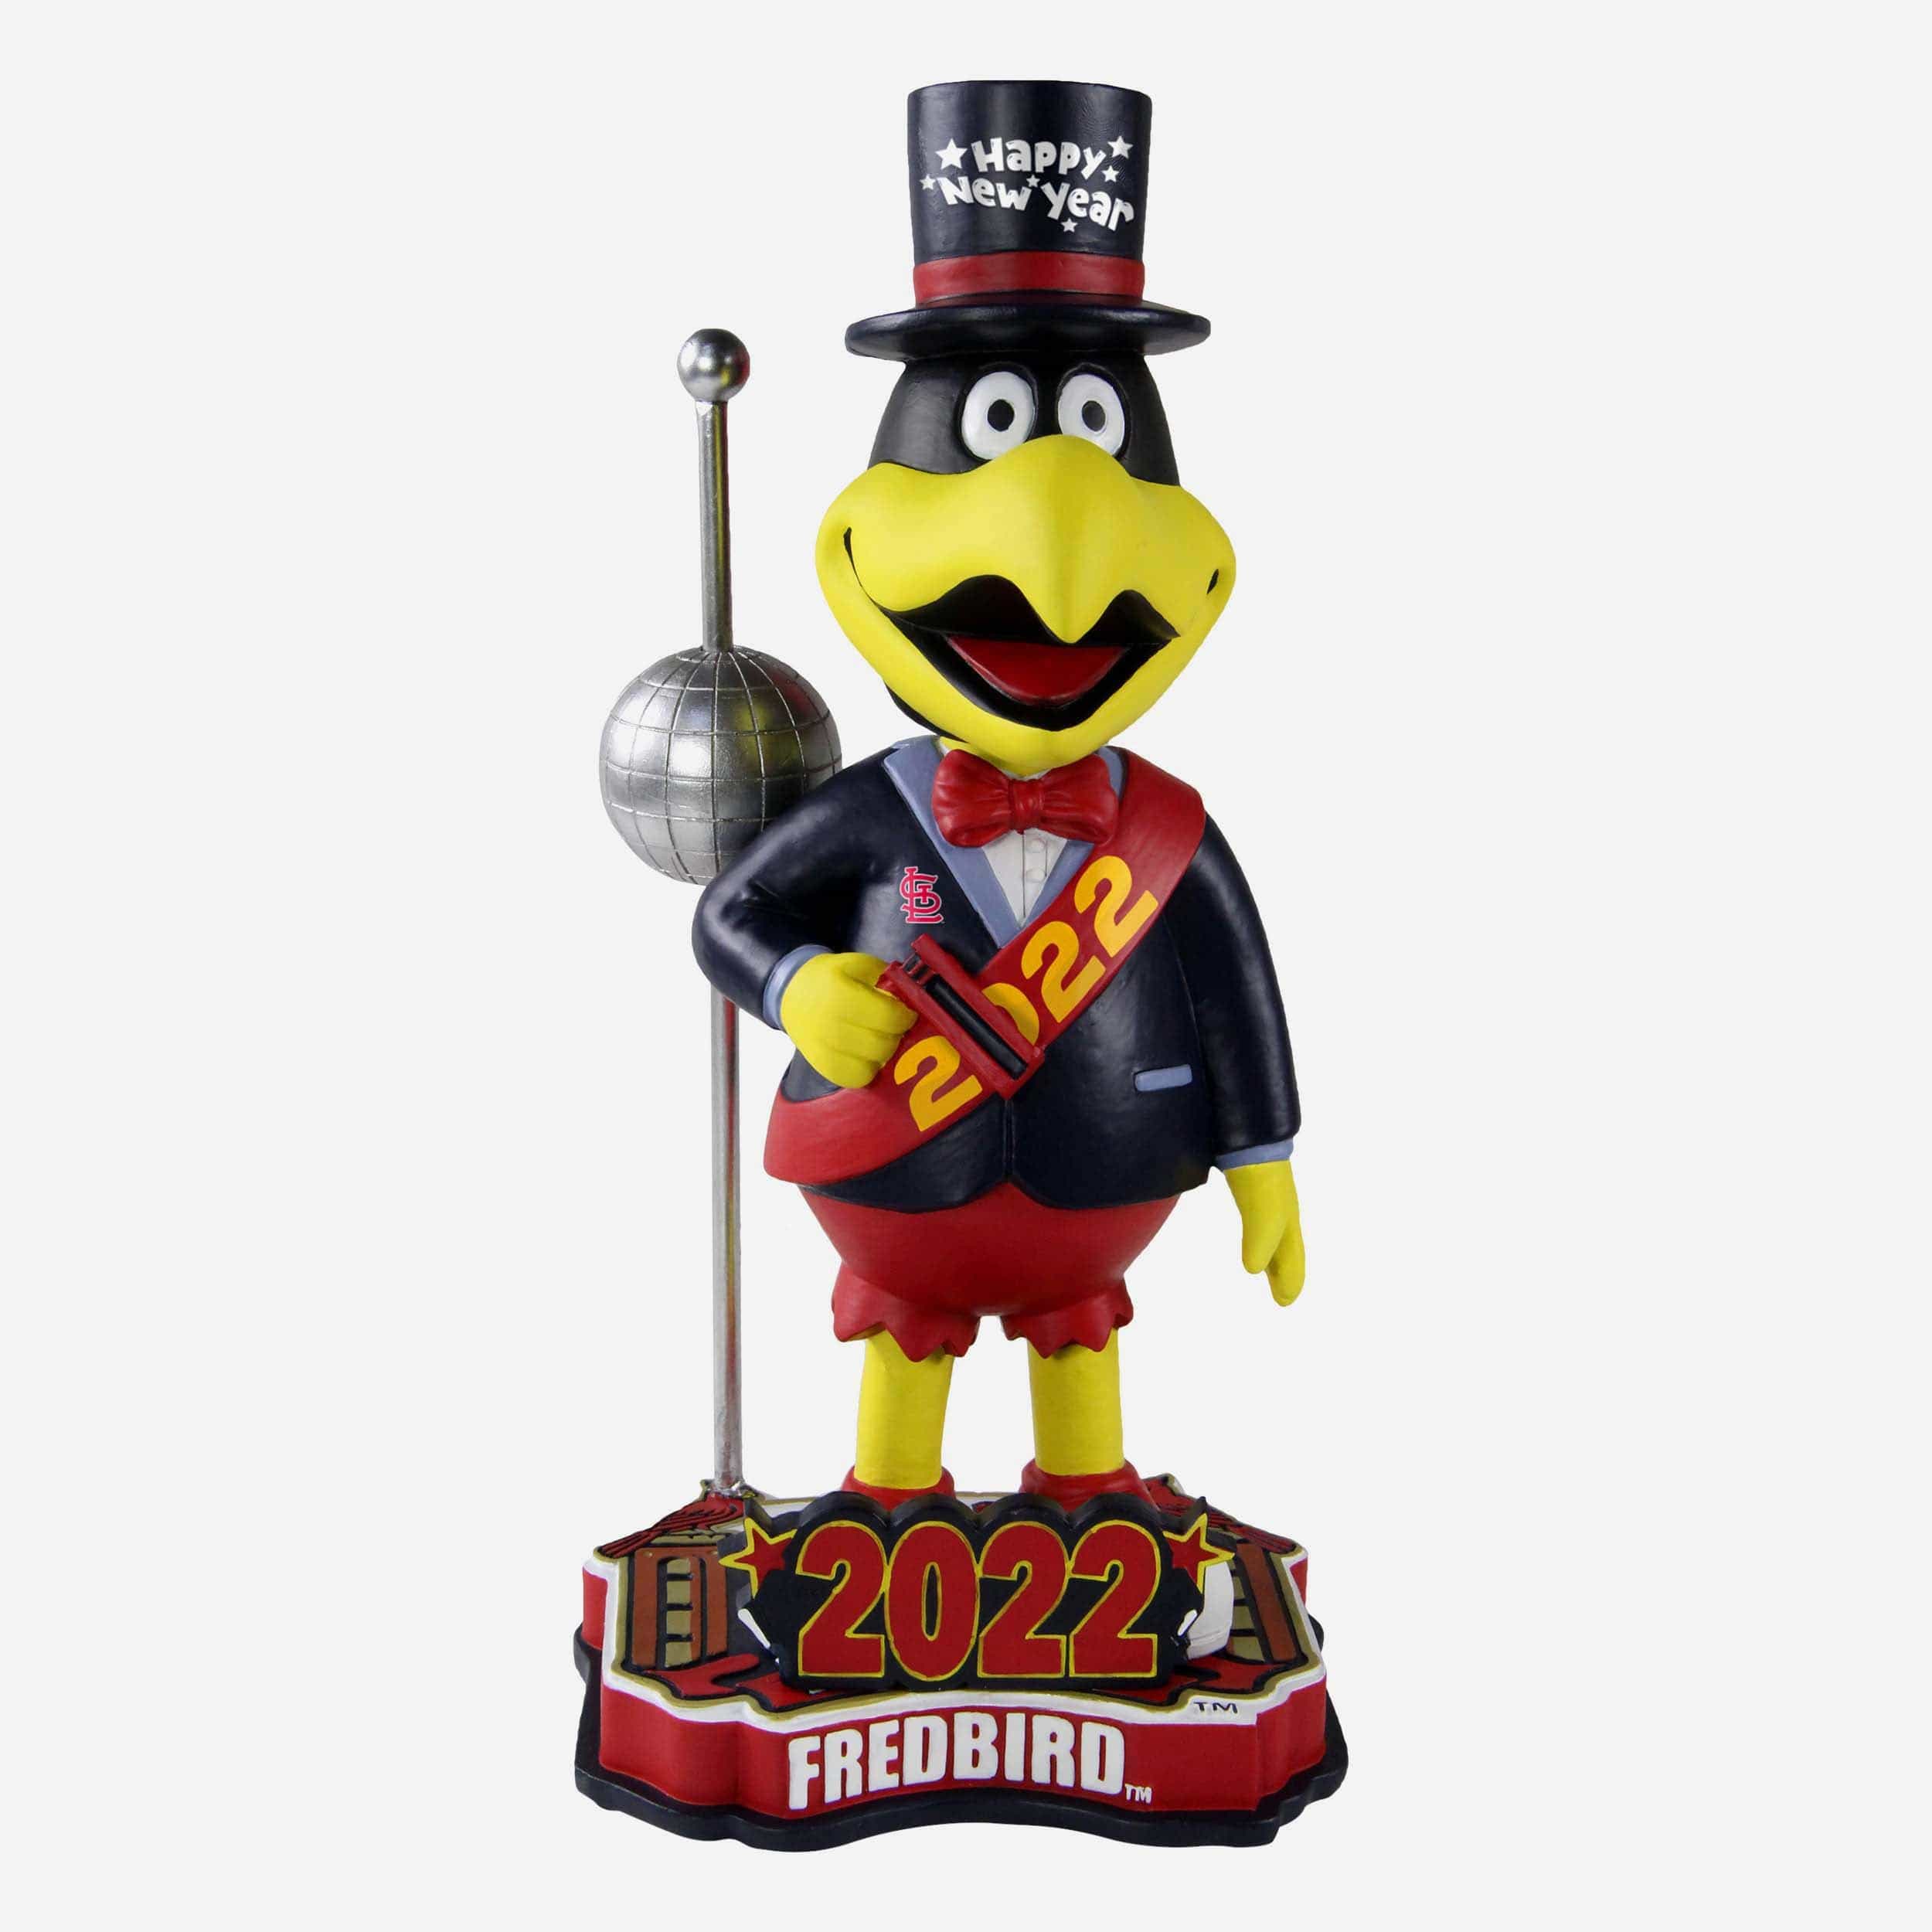 FREDBIRD St. Louis Cardinals 11x WORLD SERIES Champions Mascot